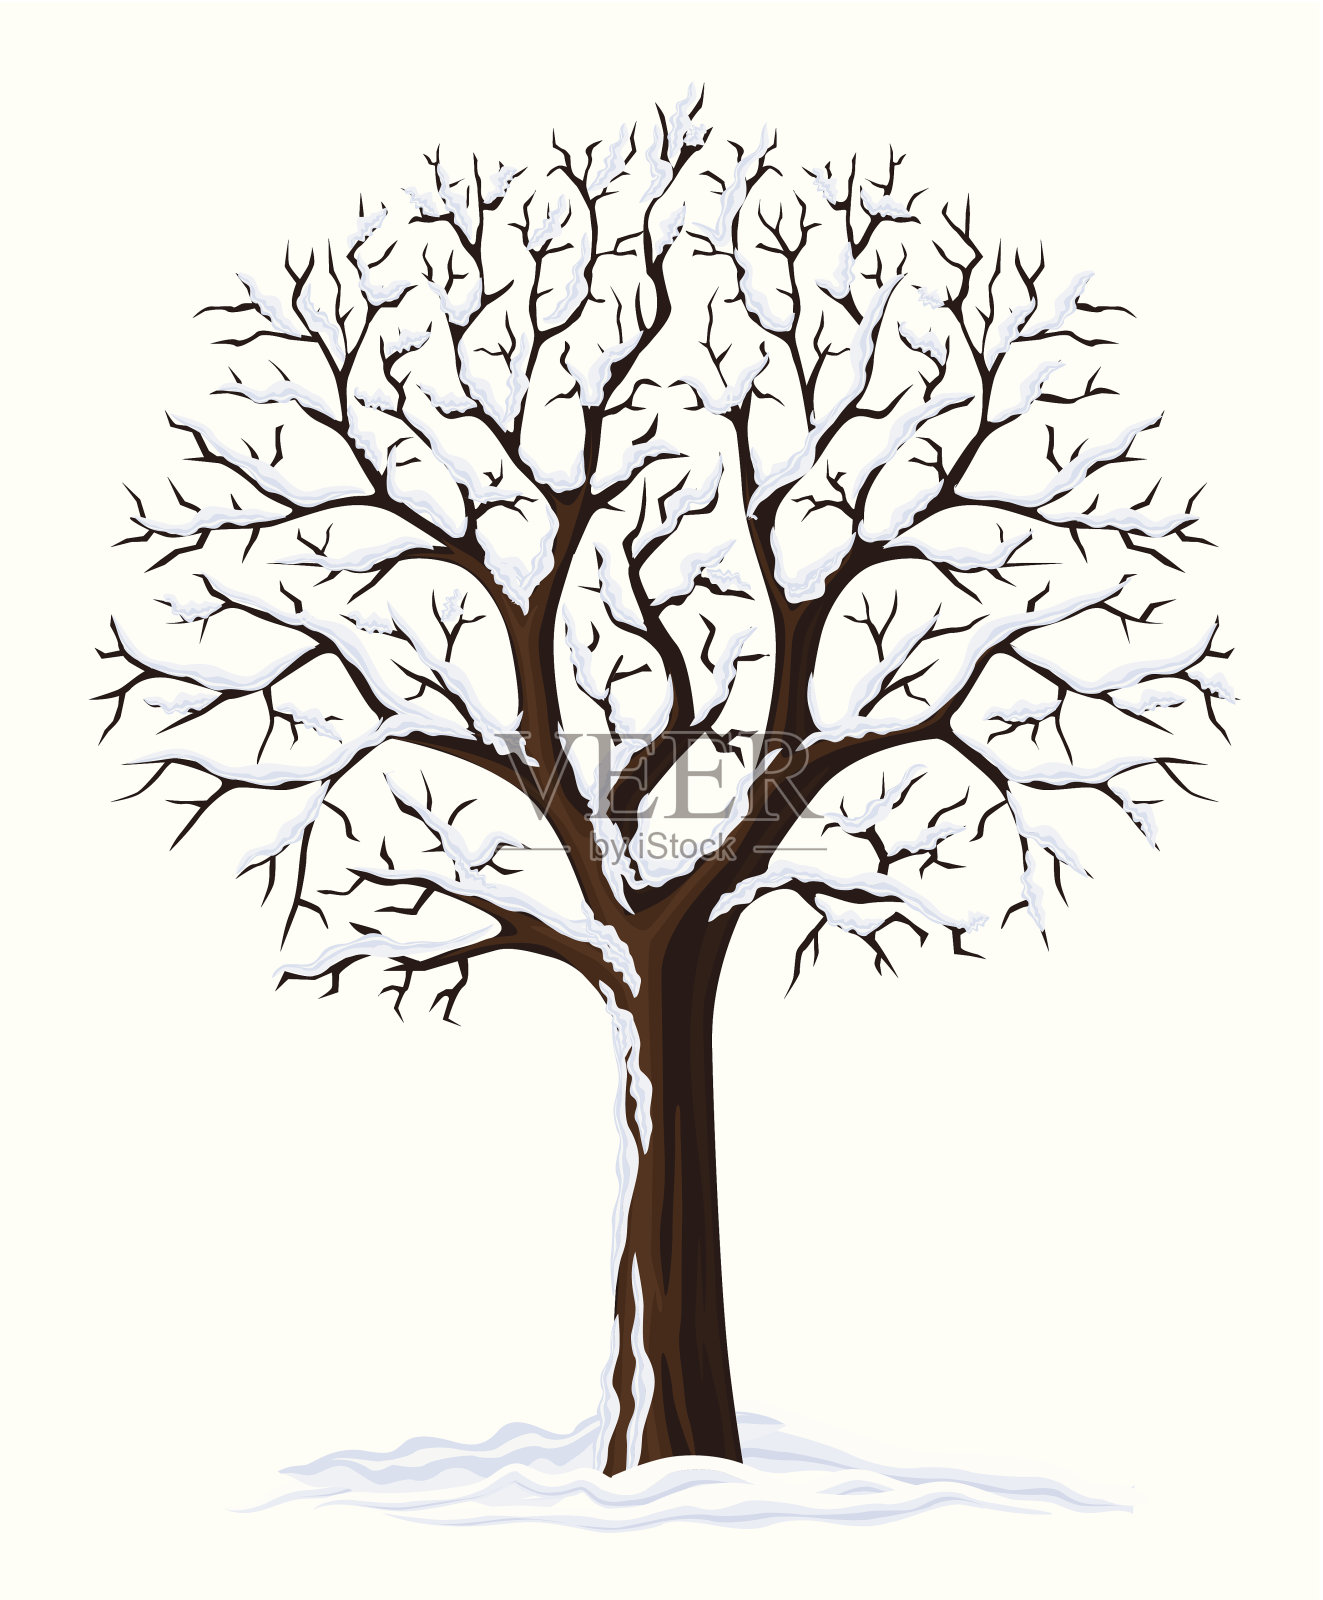 向量剪影的冬季树插画图片素材